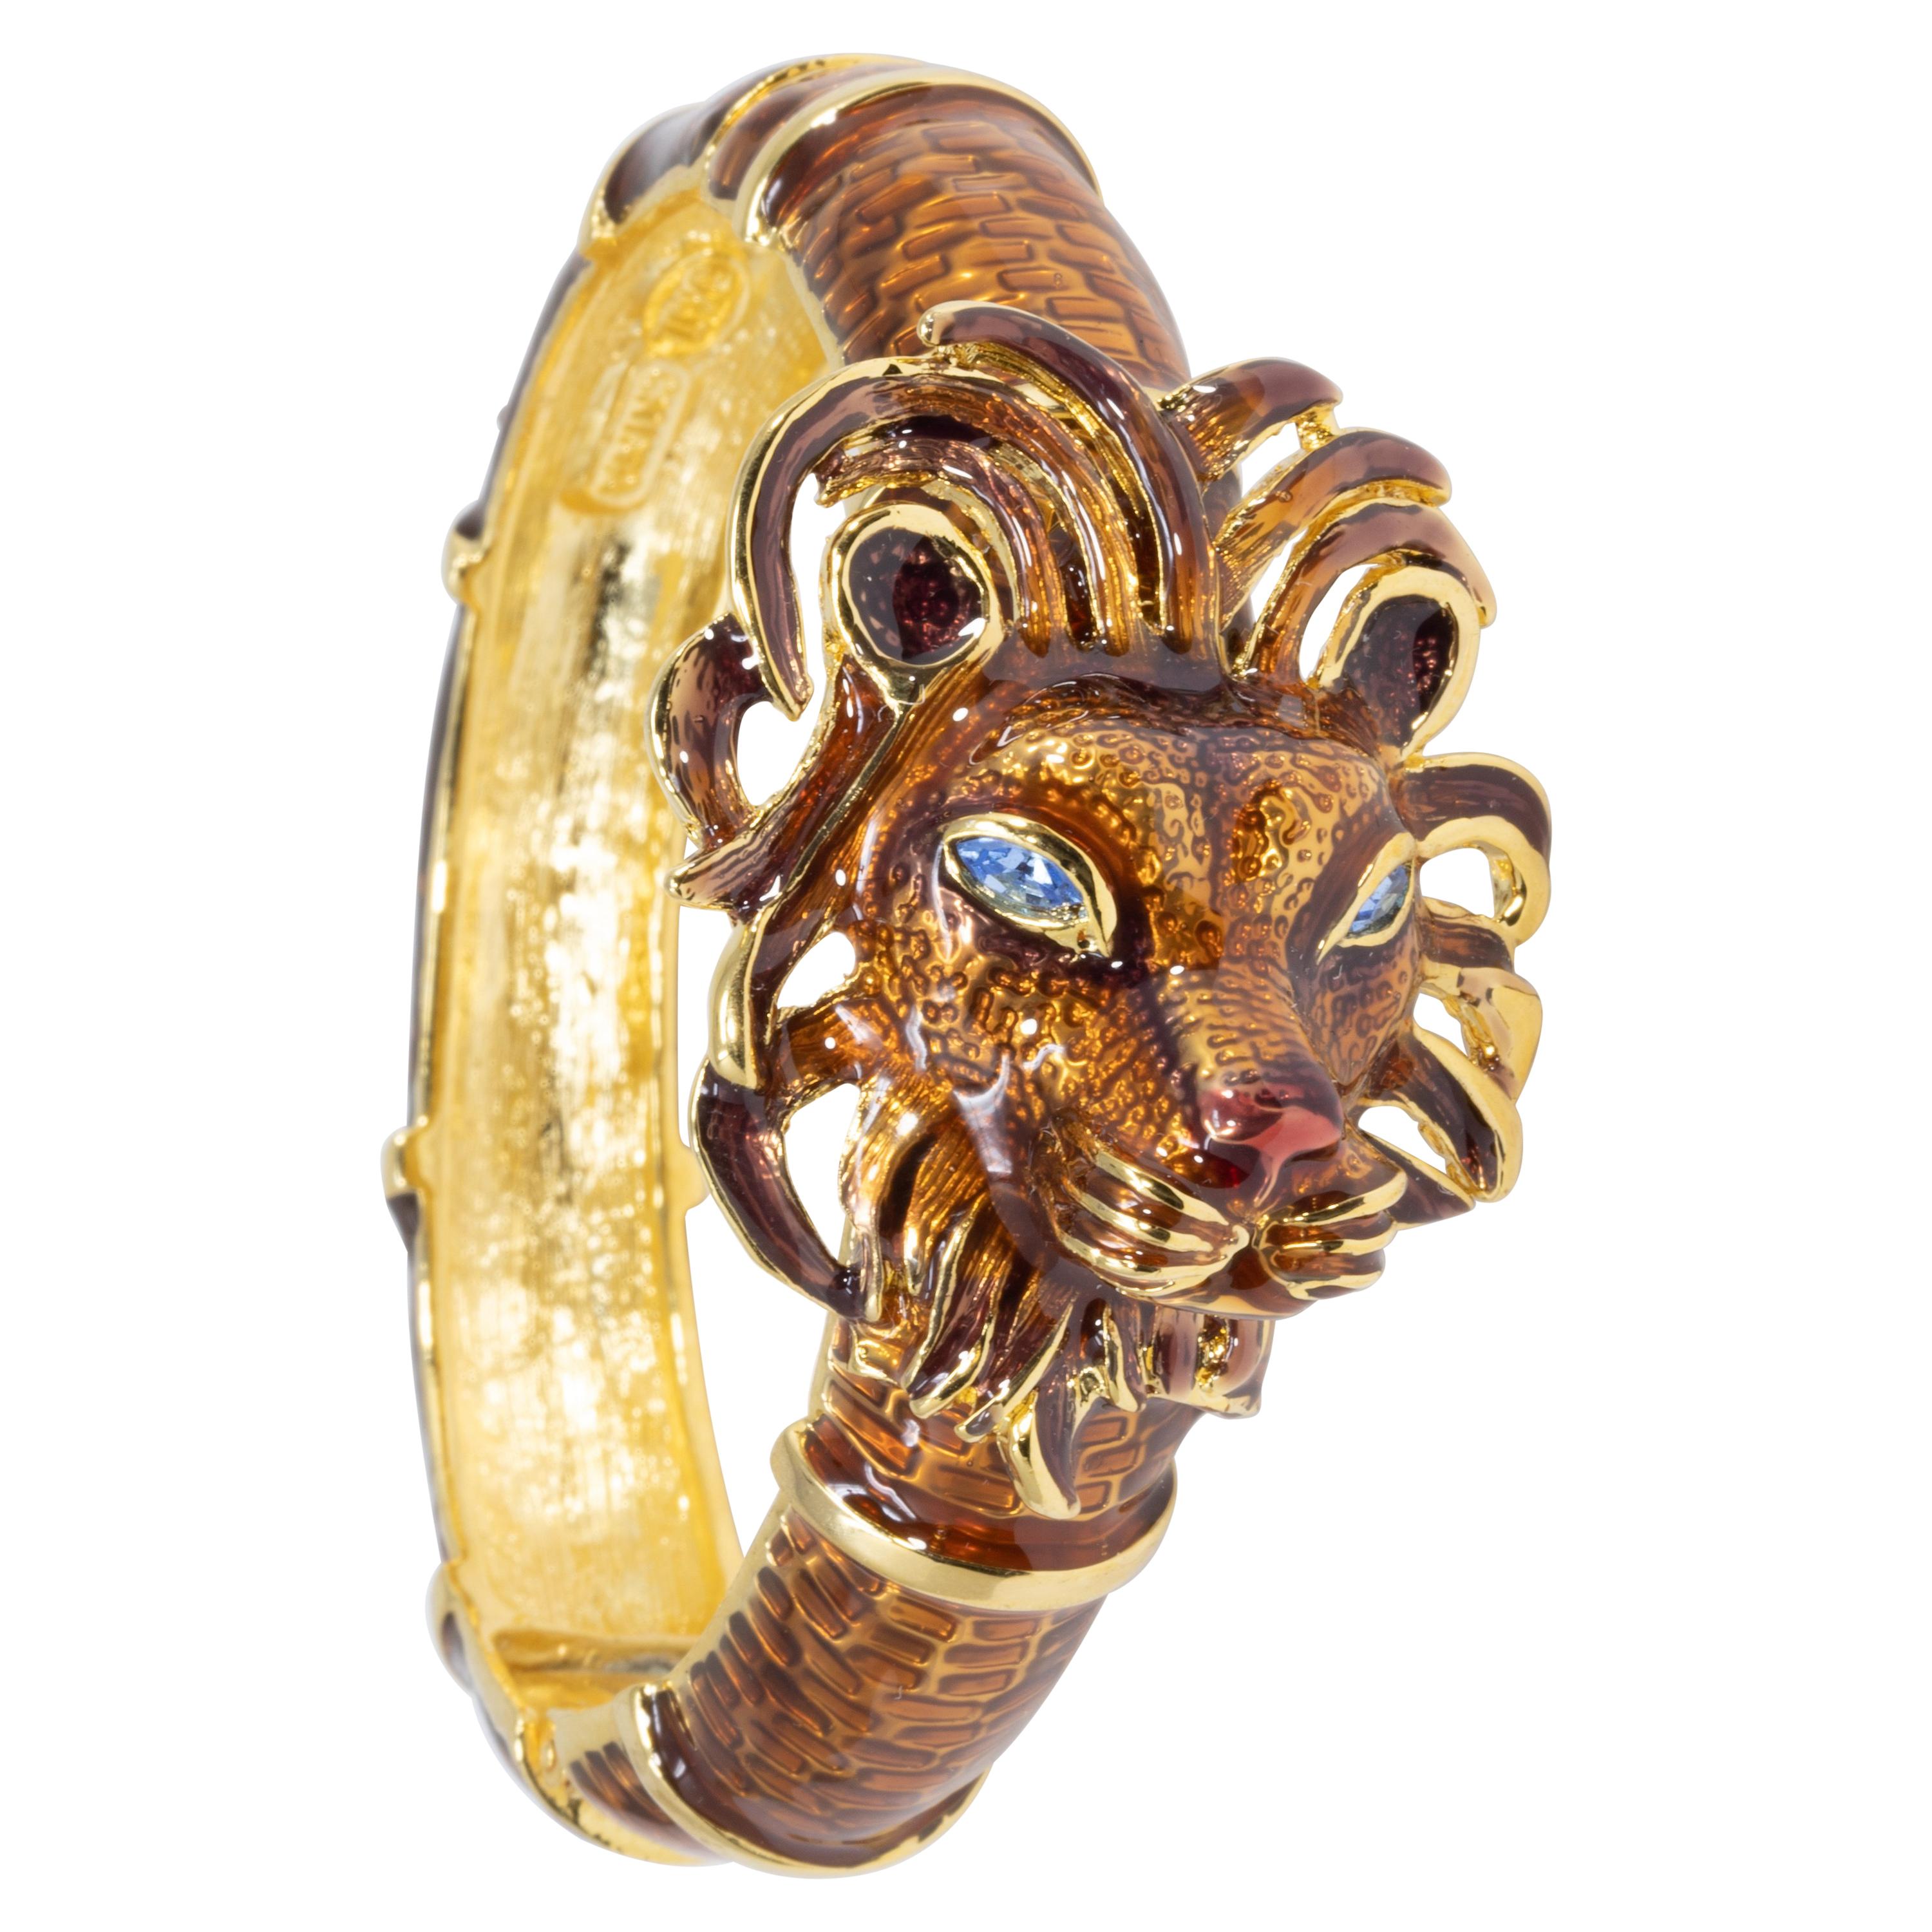 Kenneth Jay Lane KJL Lion Bracelet with Brown Enamel, Blue Crystals, in Gold